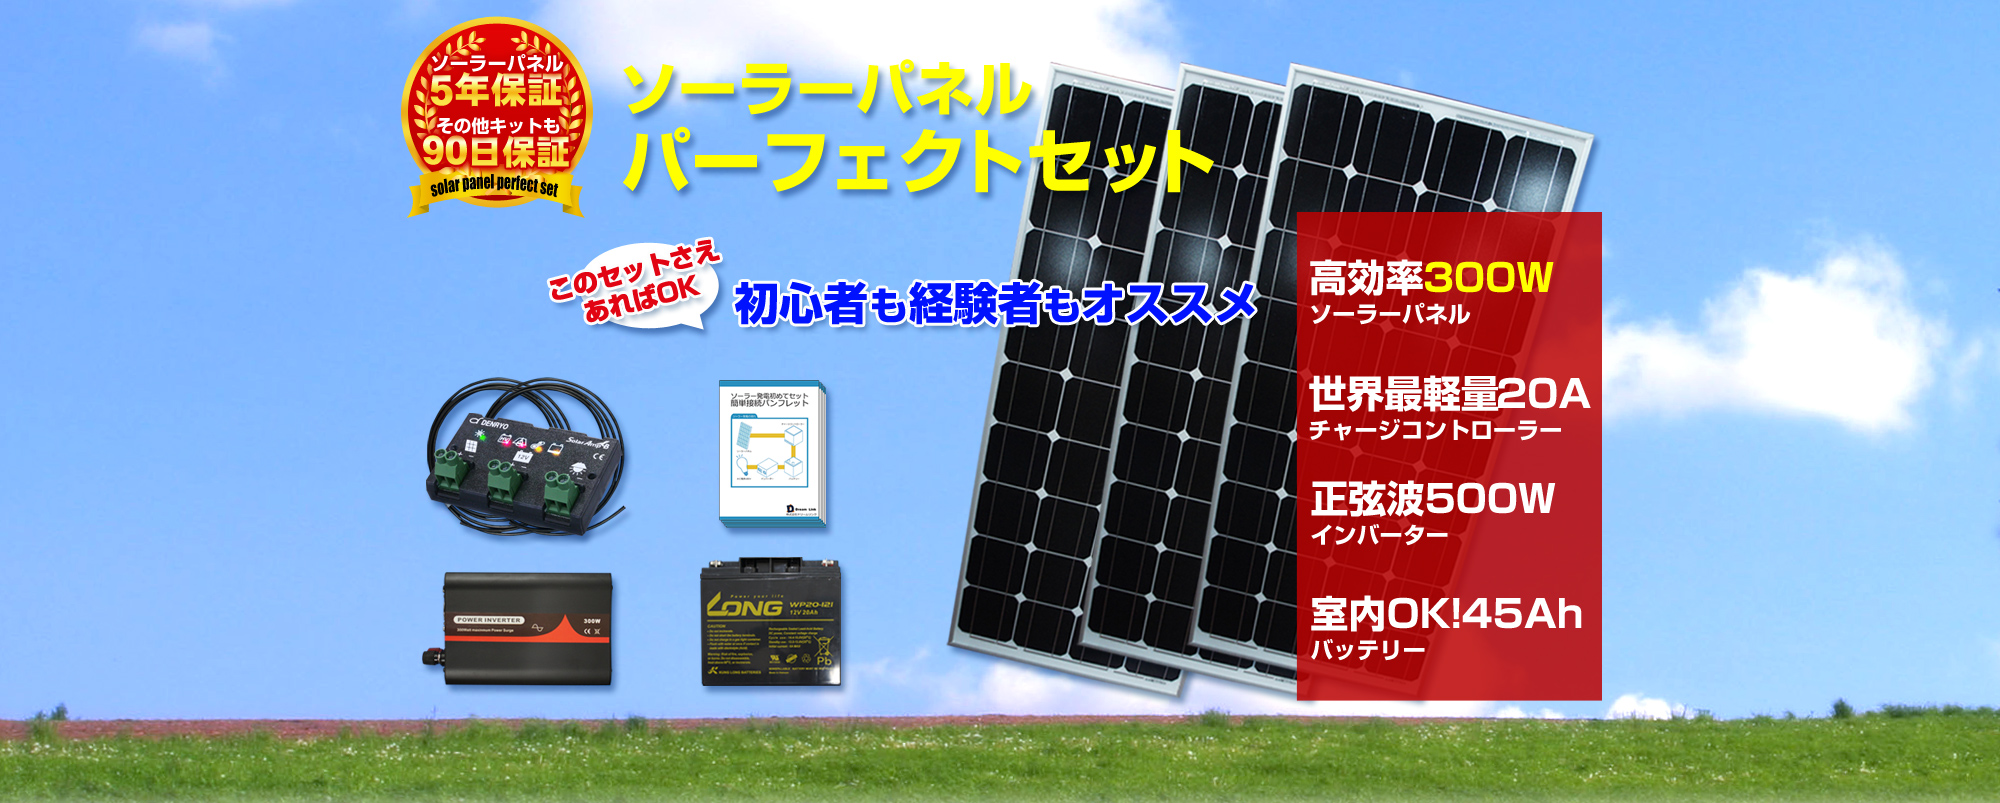 【楽天市場】【送料無料】 太陽光 発電 セット ソーラーパネル発電 300w 家庭用 蓄電池 太陽光パネル 太陽発電 太陽電池 ソーラー